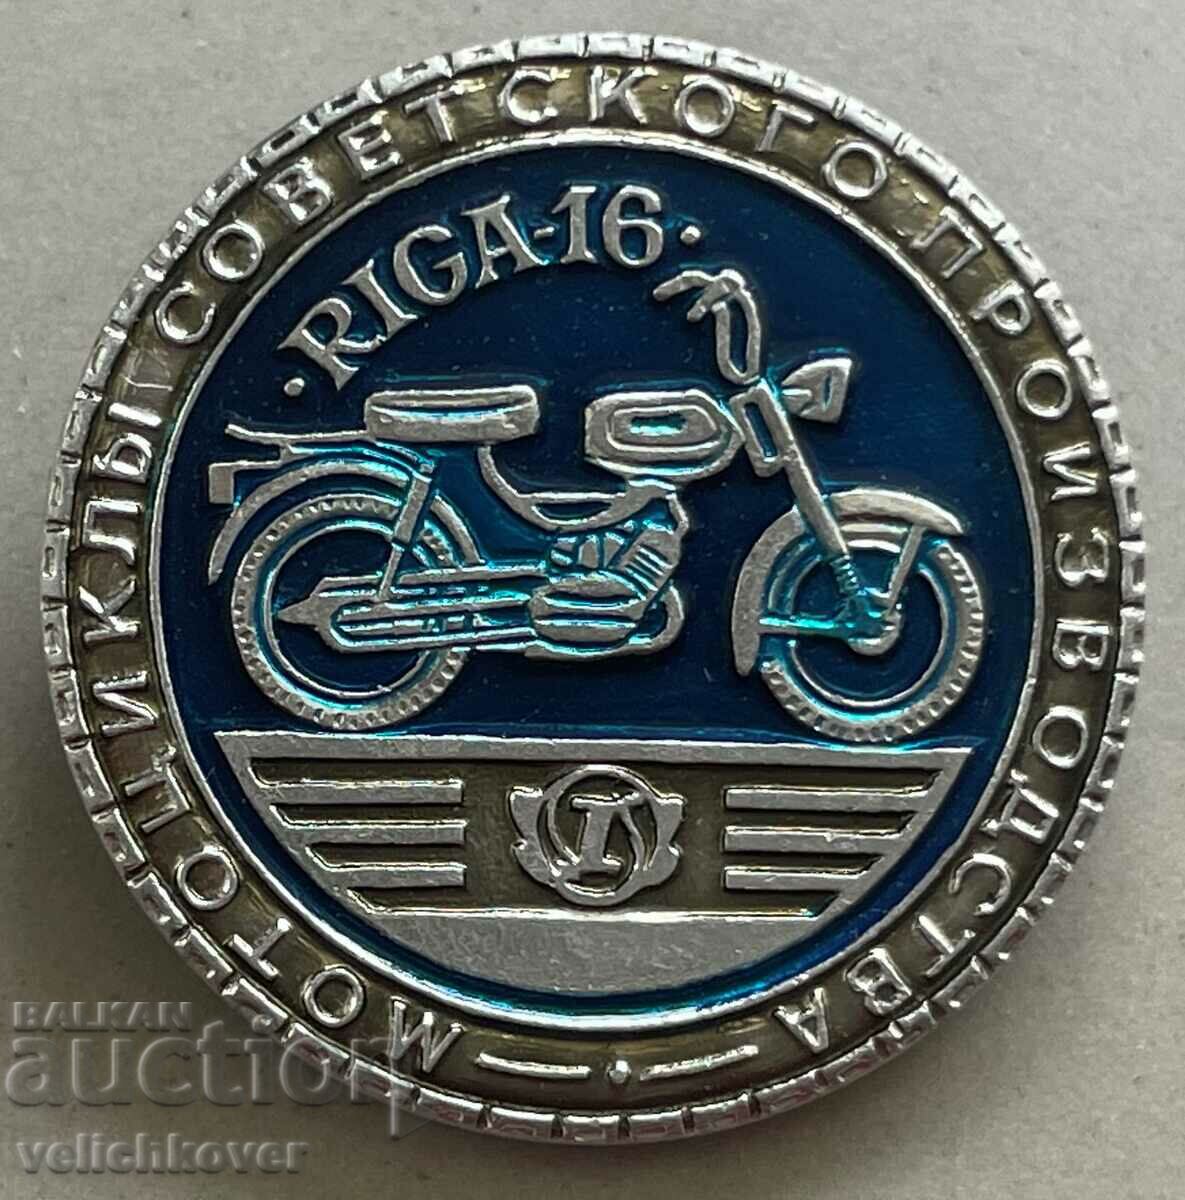 34520 USSR sign Soviet motorcycles model Riga-16